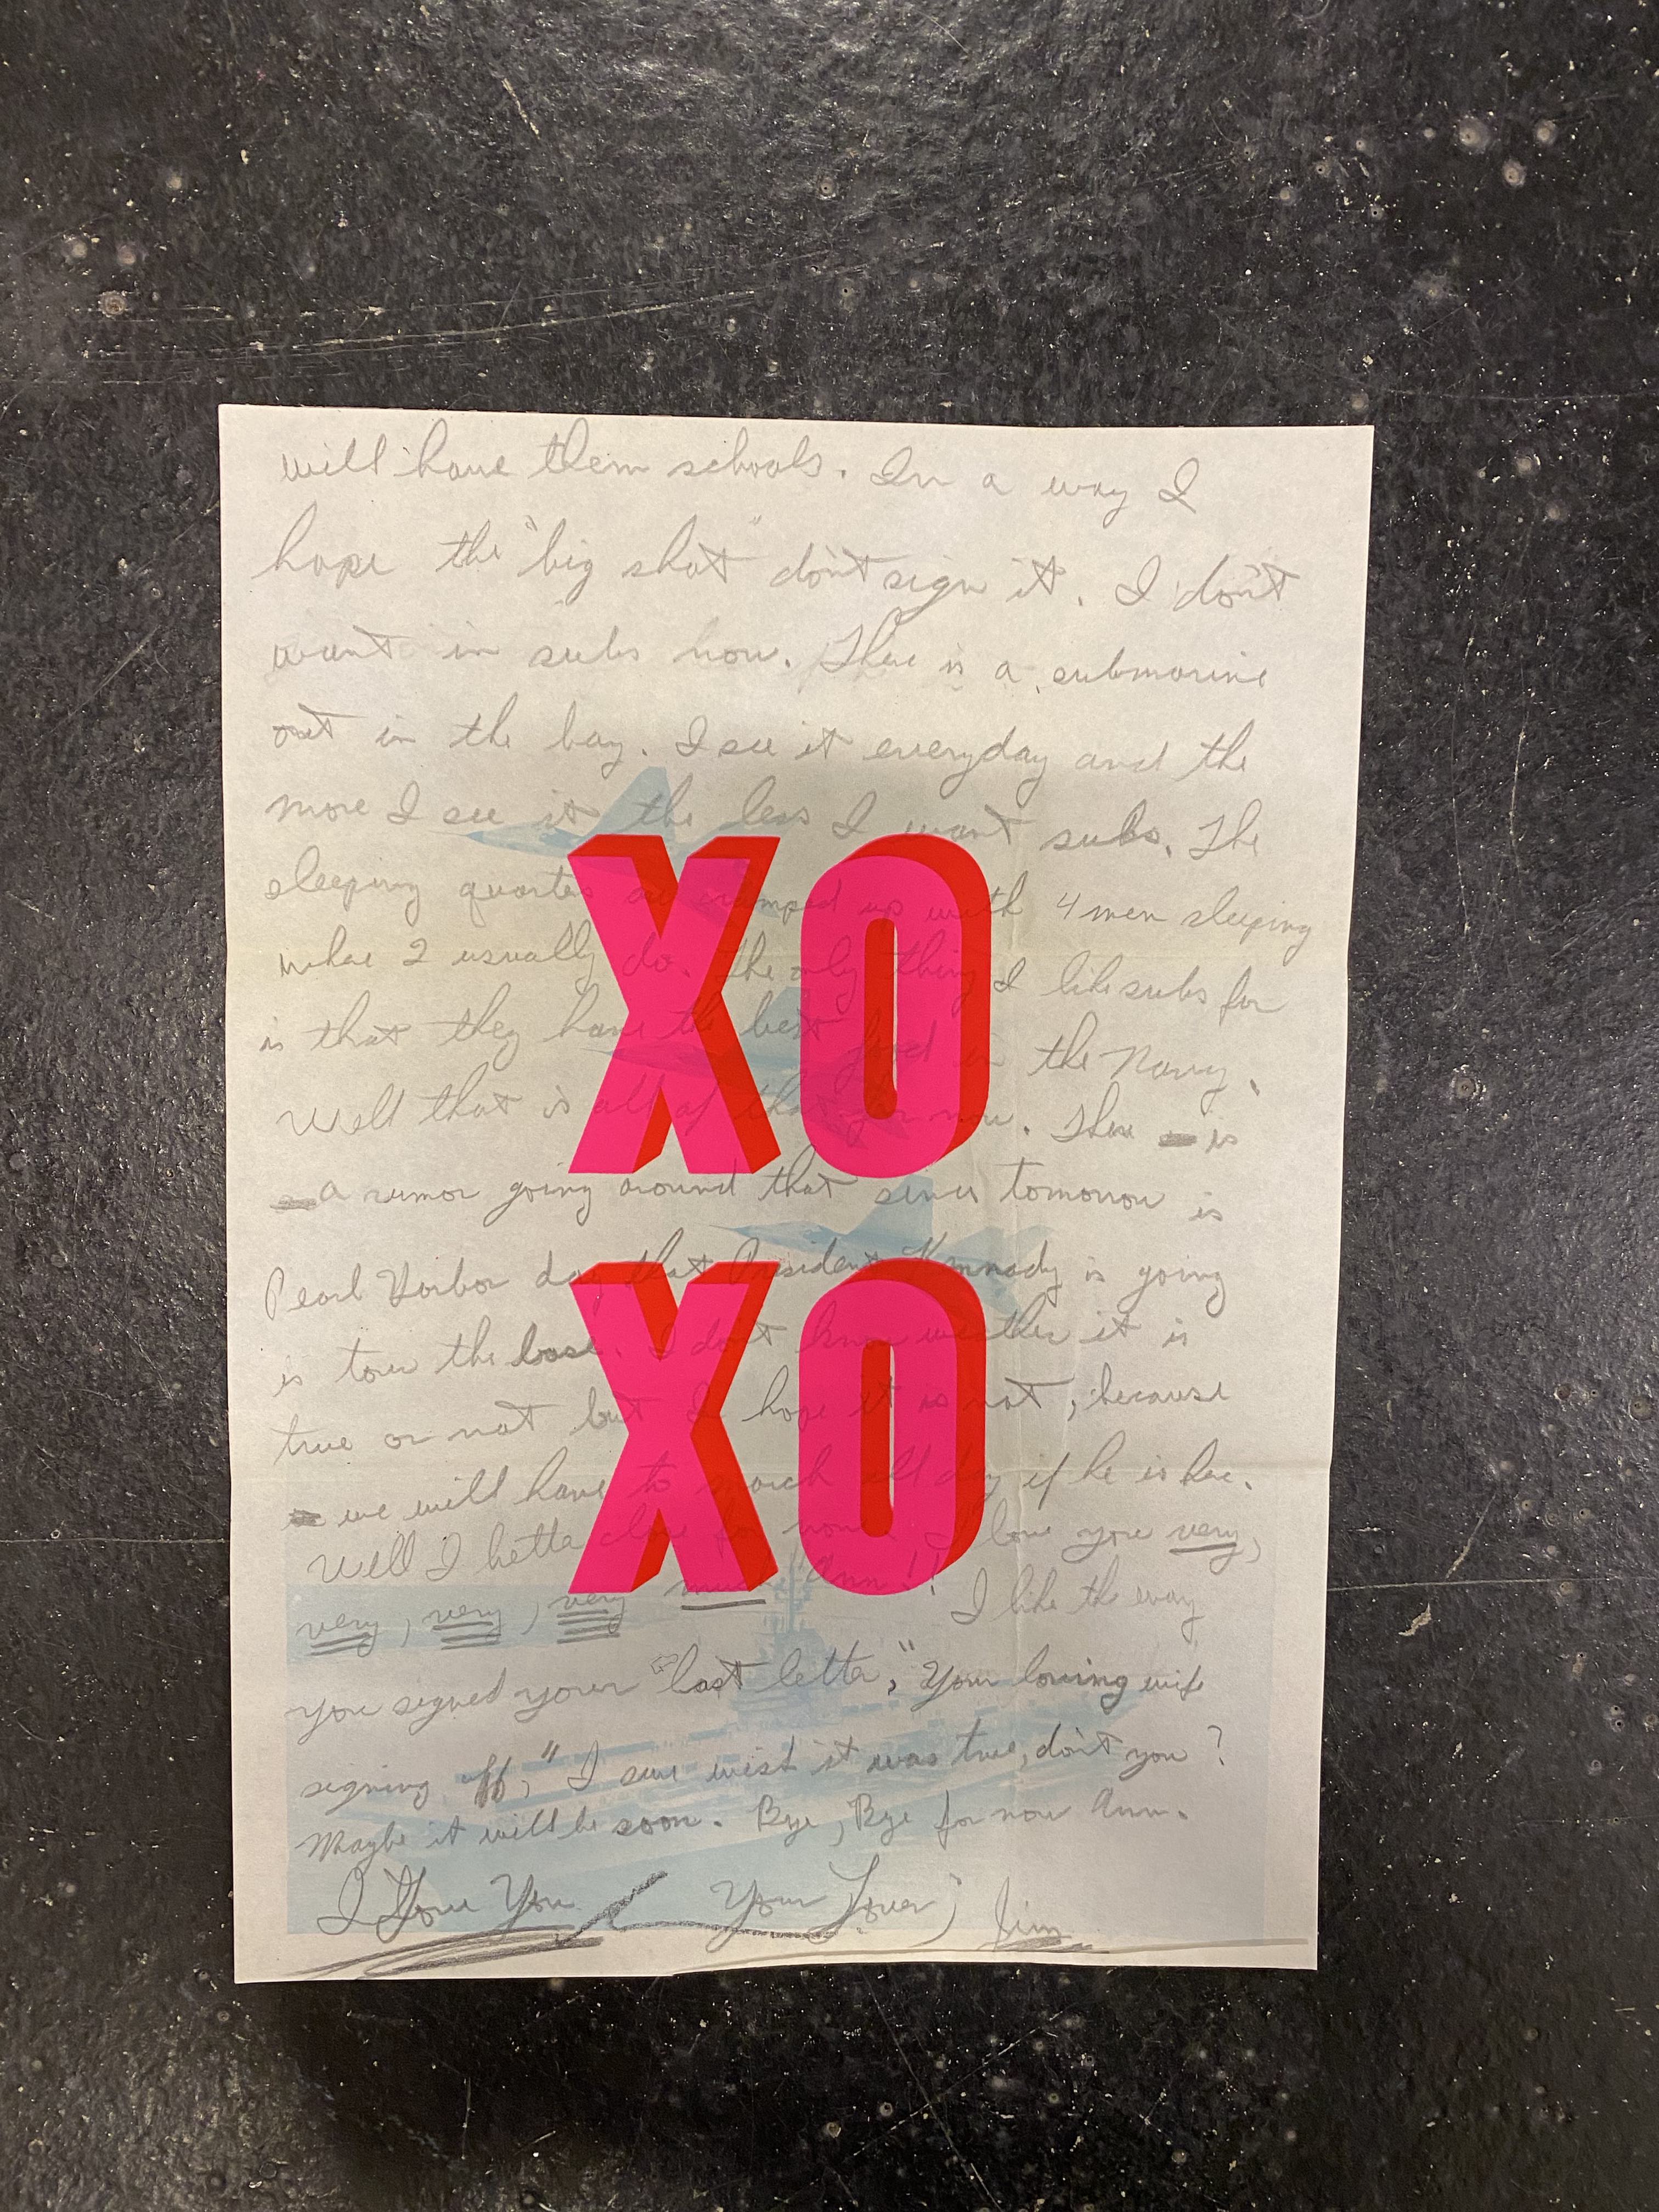 XO XO - Love Letter